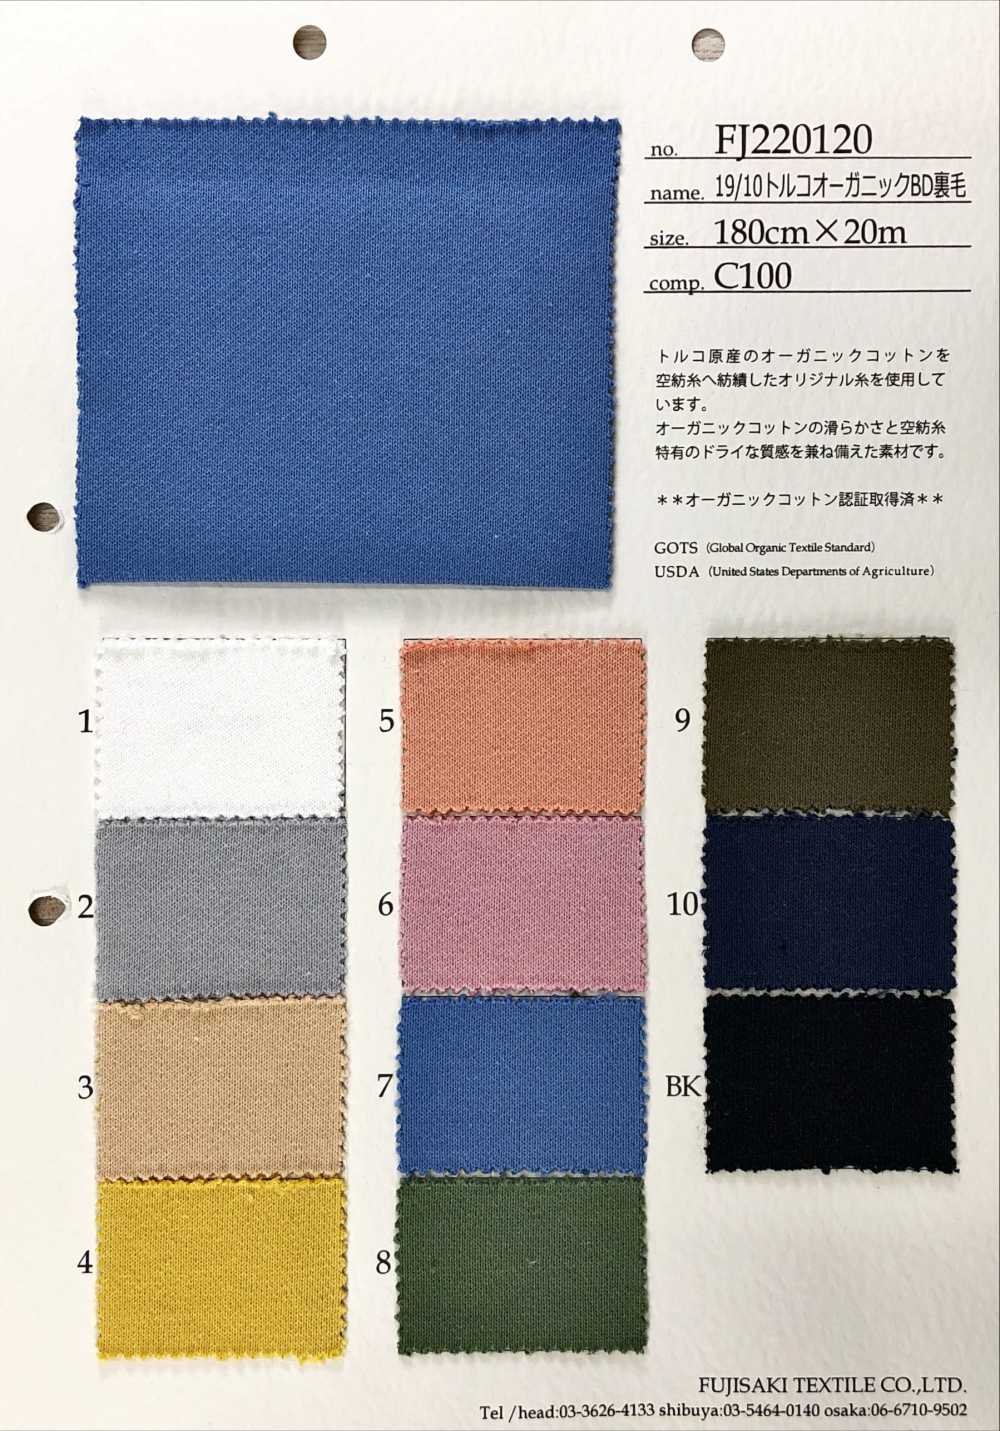 FJ220120 19/10 Velo BD Orgânico Turco[Têxtil / Tecido] Fujisaki Textile